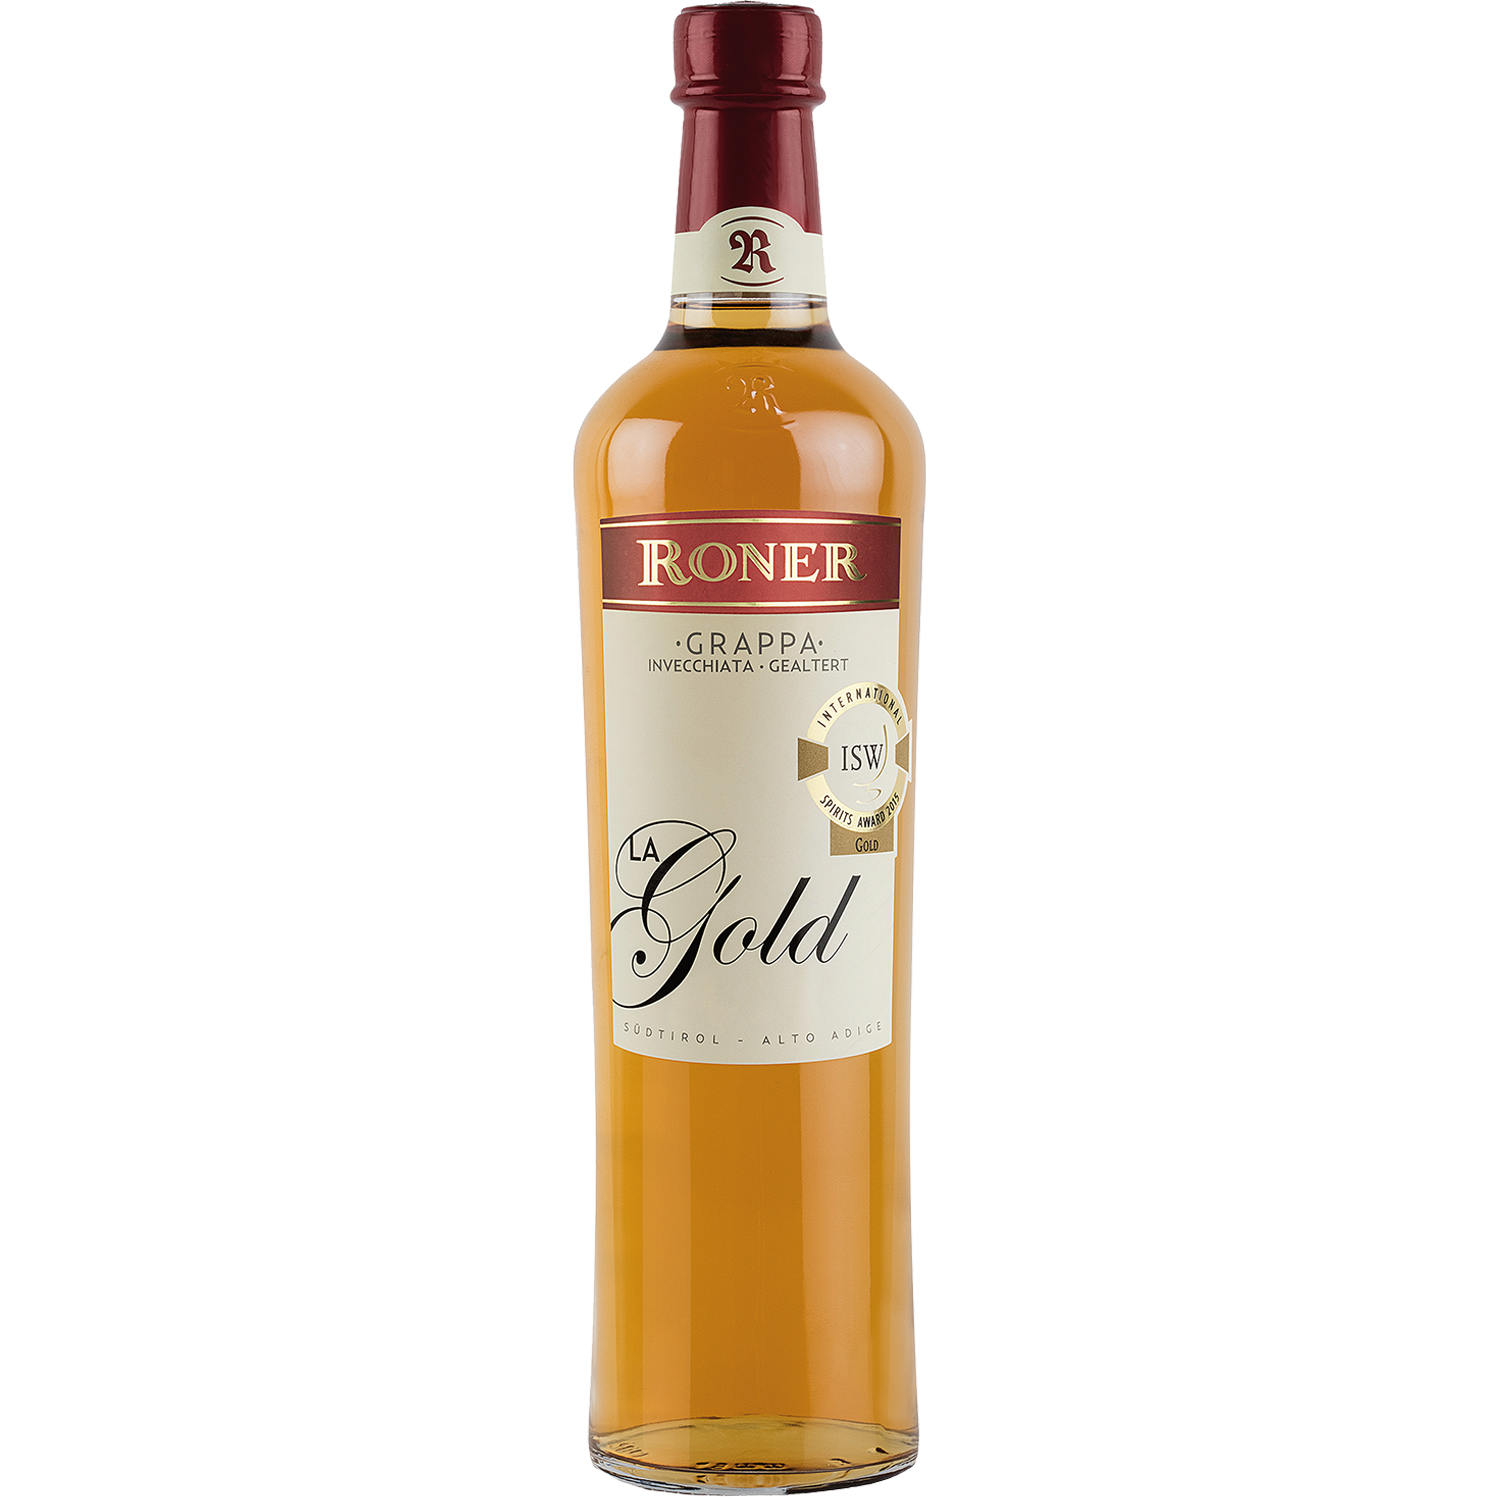 Grappa la Gold by Roner in 700ml bottle